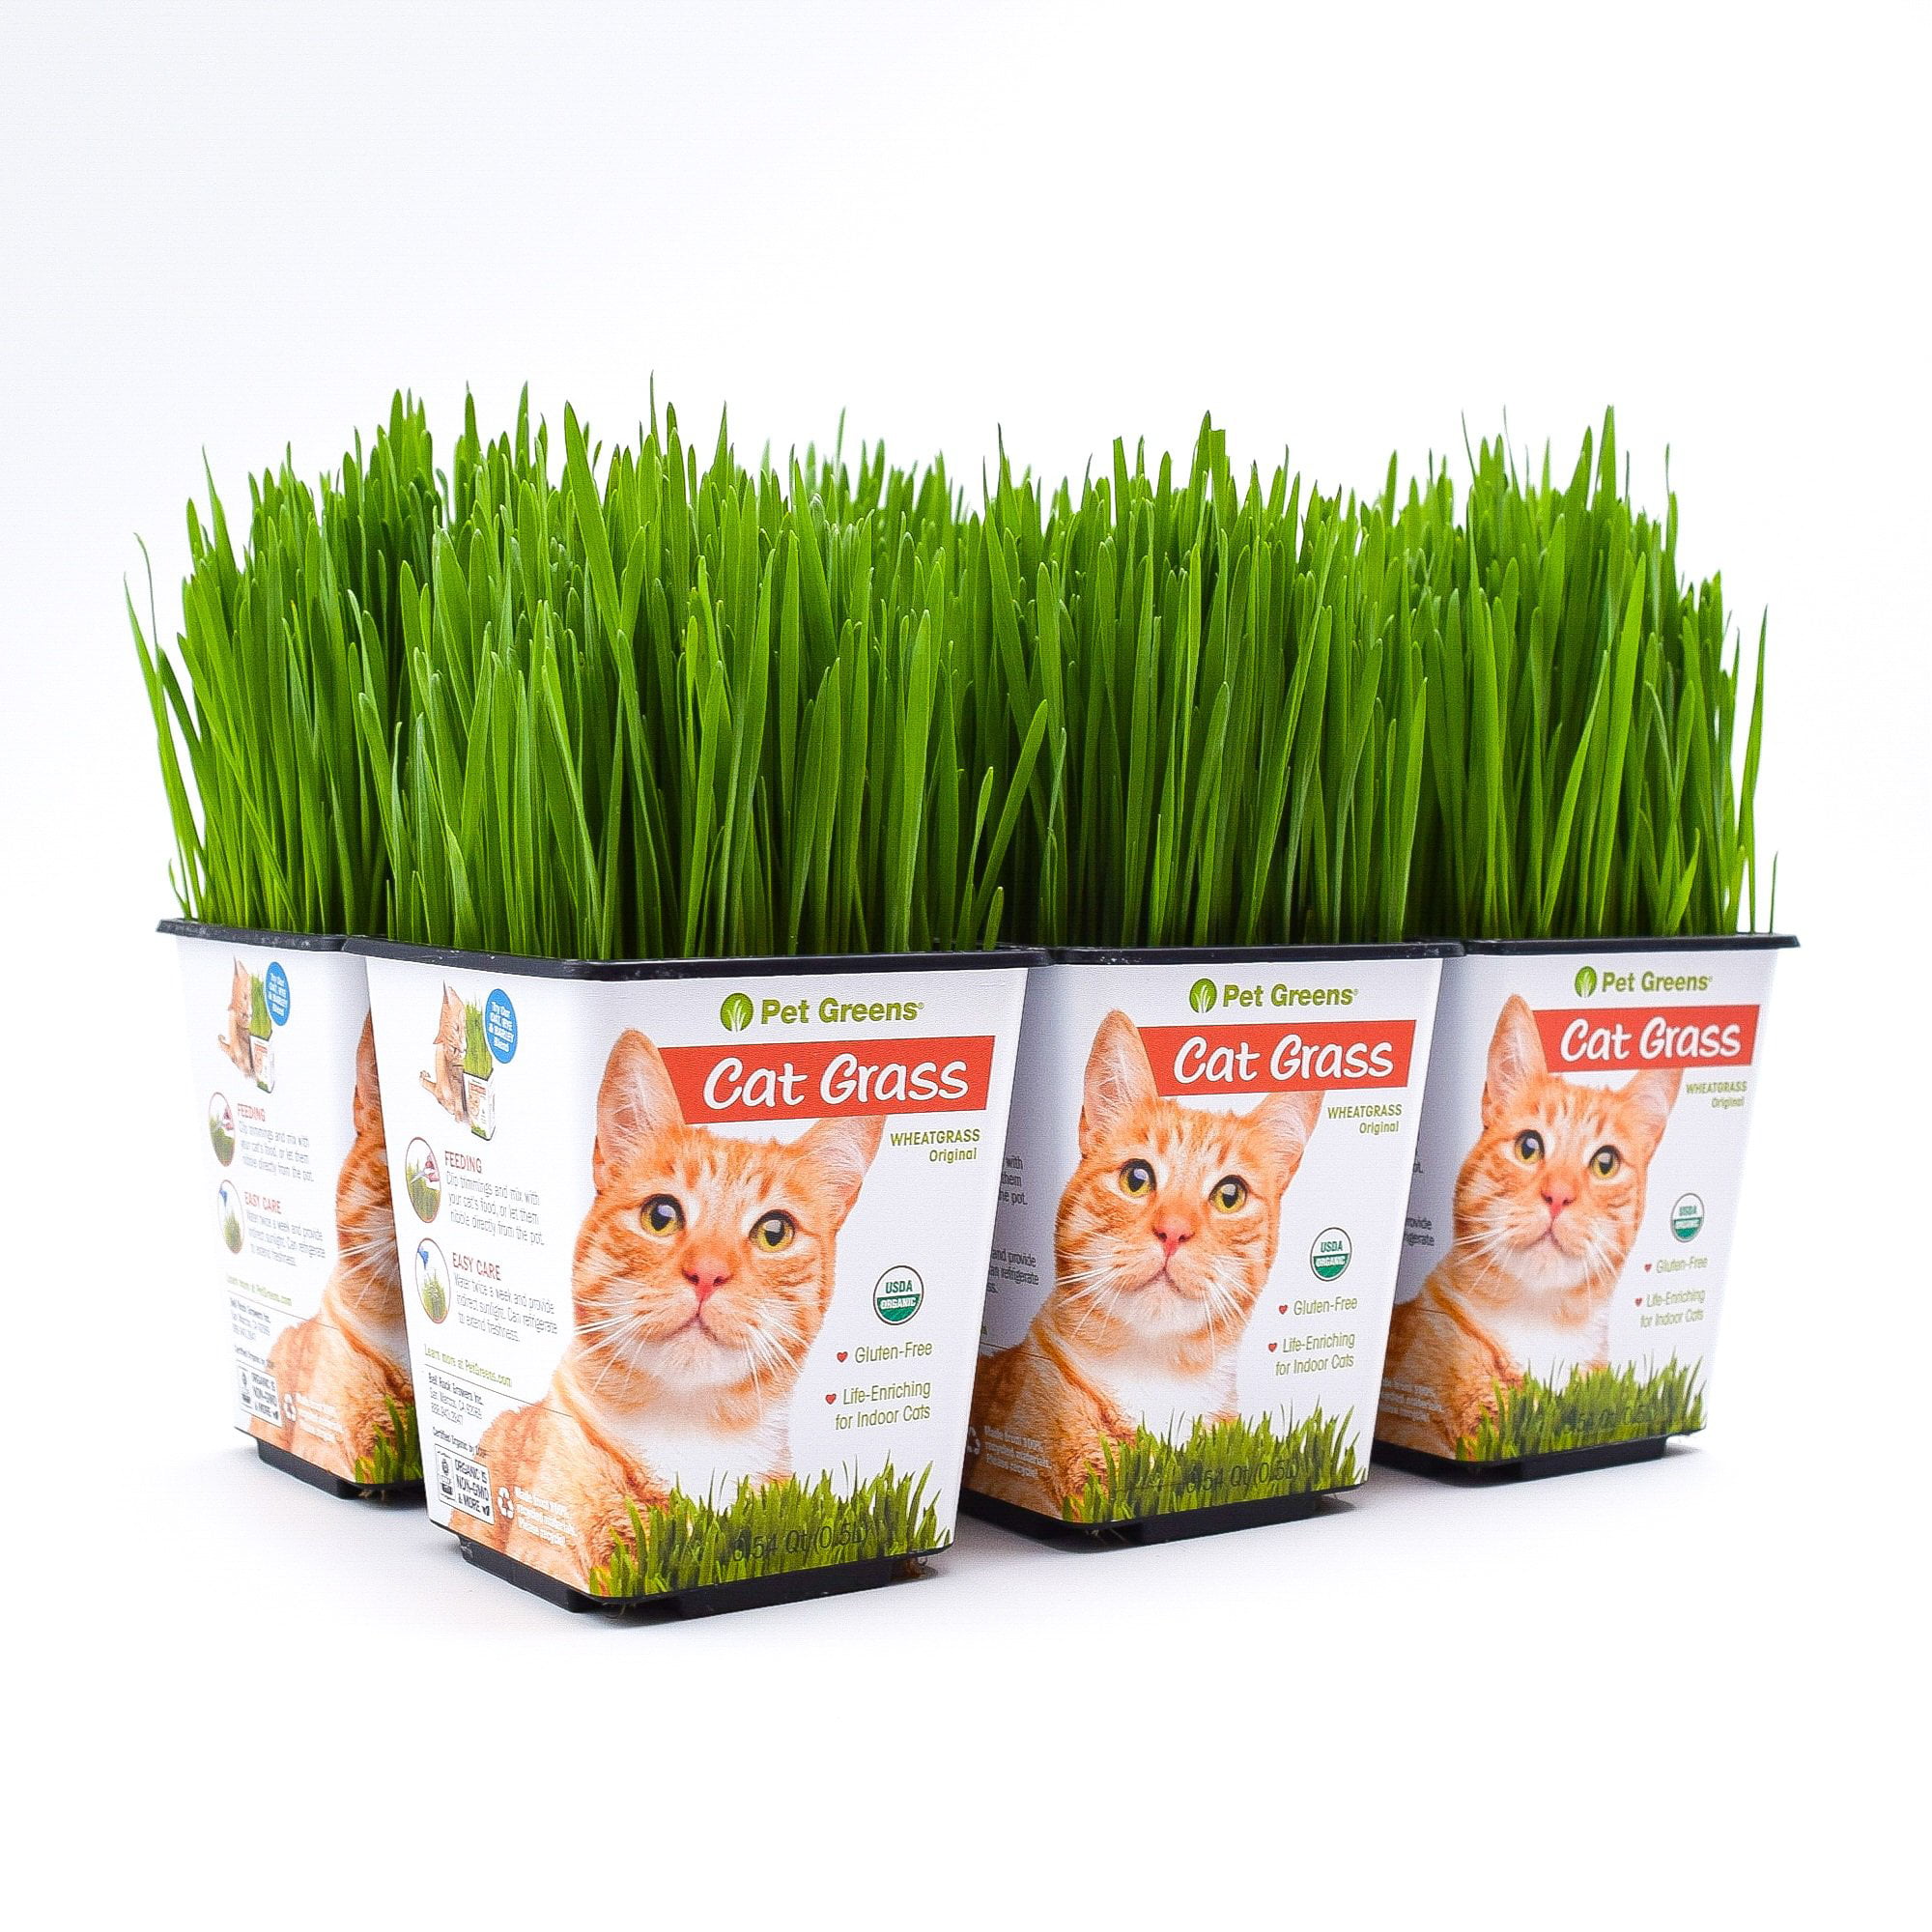 Pet Greens Cat Grass Original Wheatgrass, Pack of 20   Walmart.com